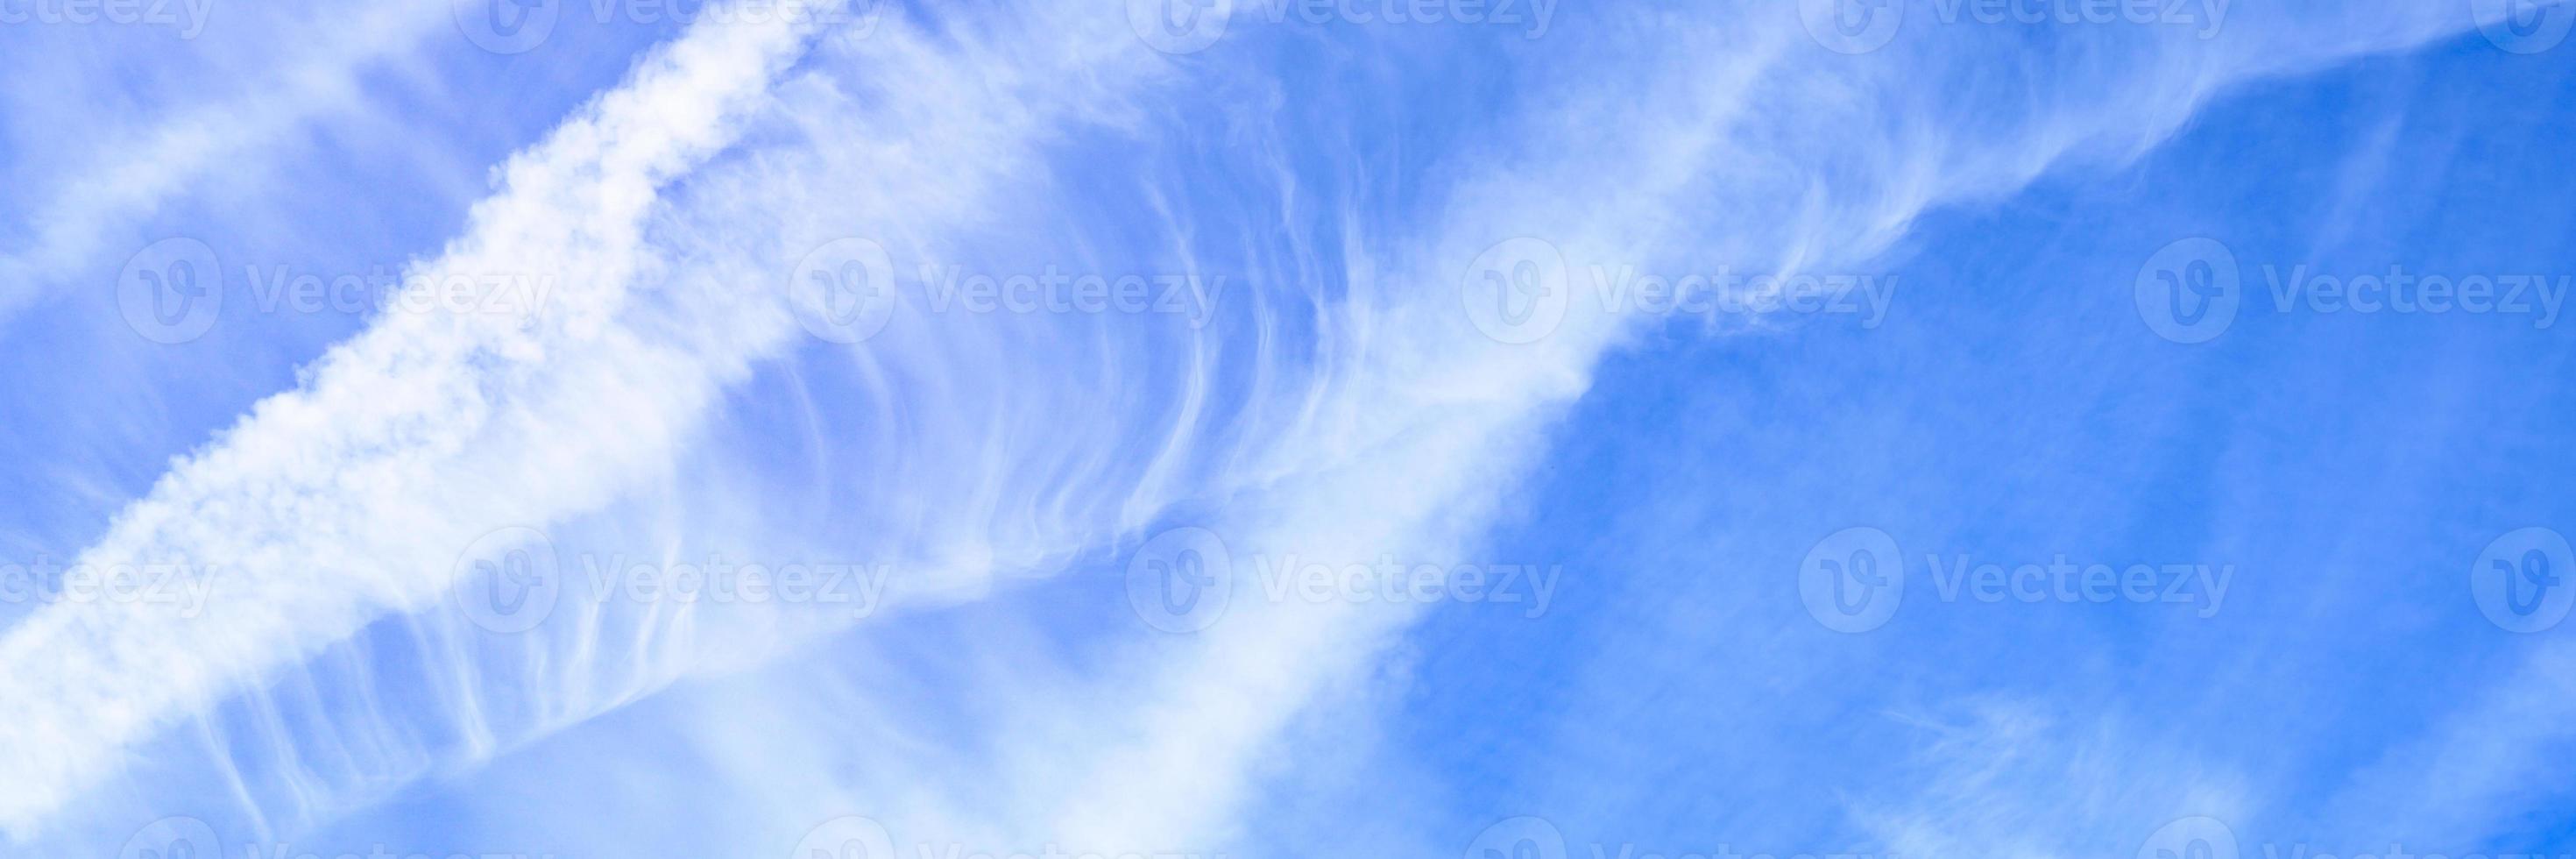 beaux nuages de ciel bleu photo